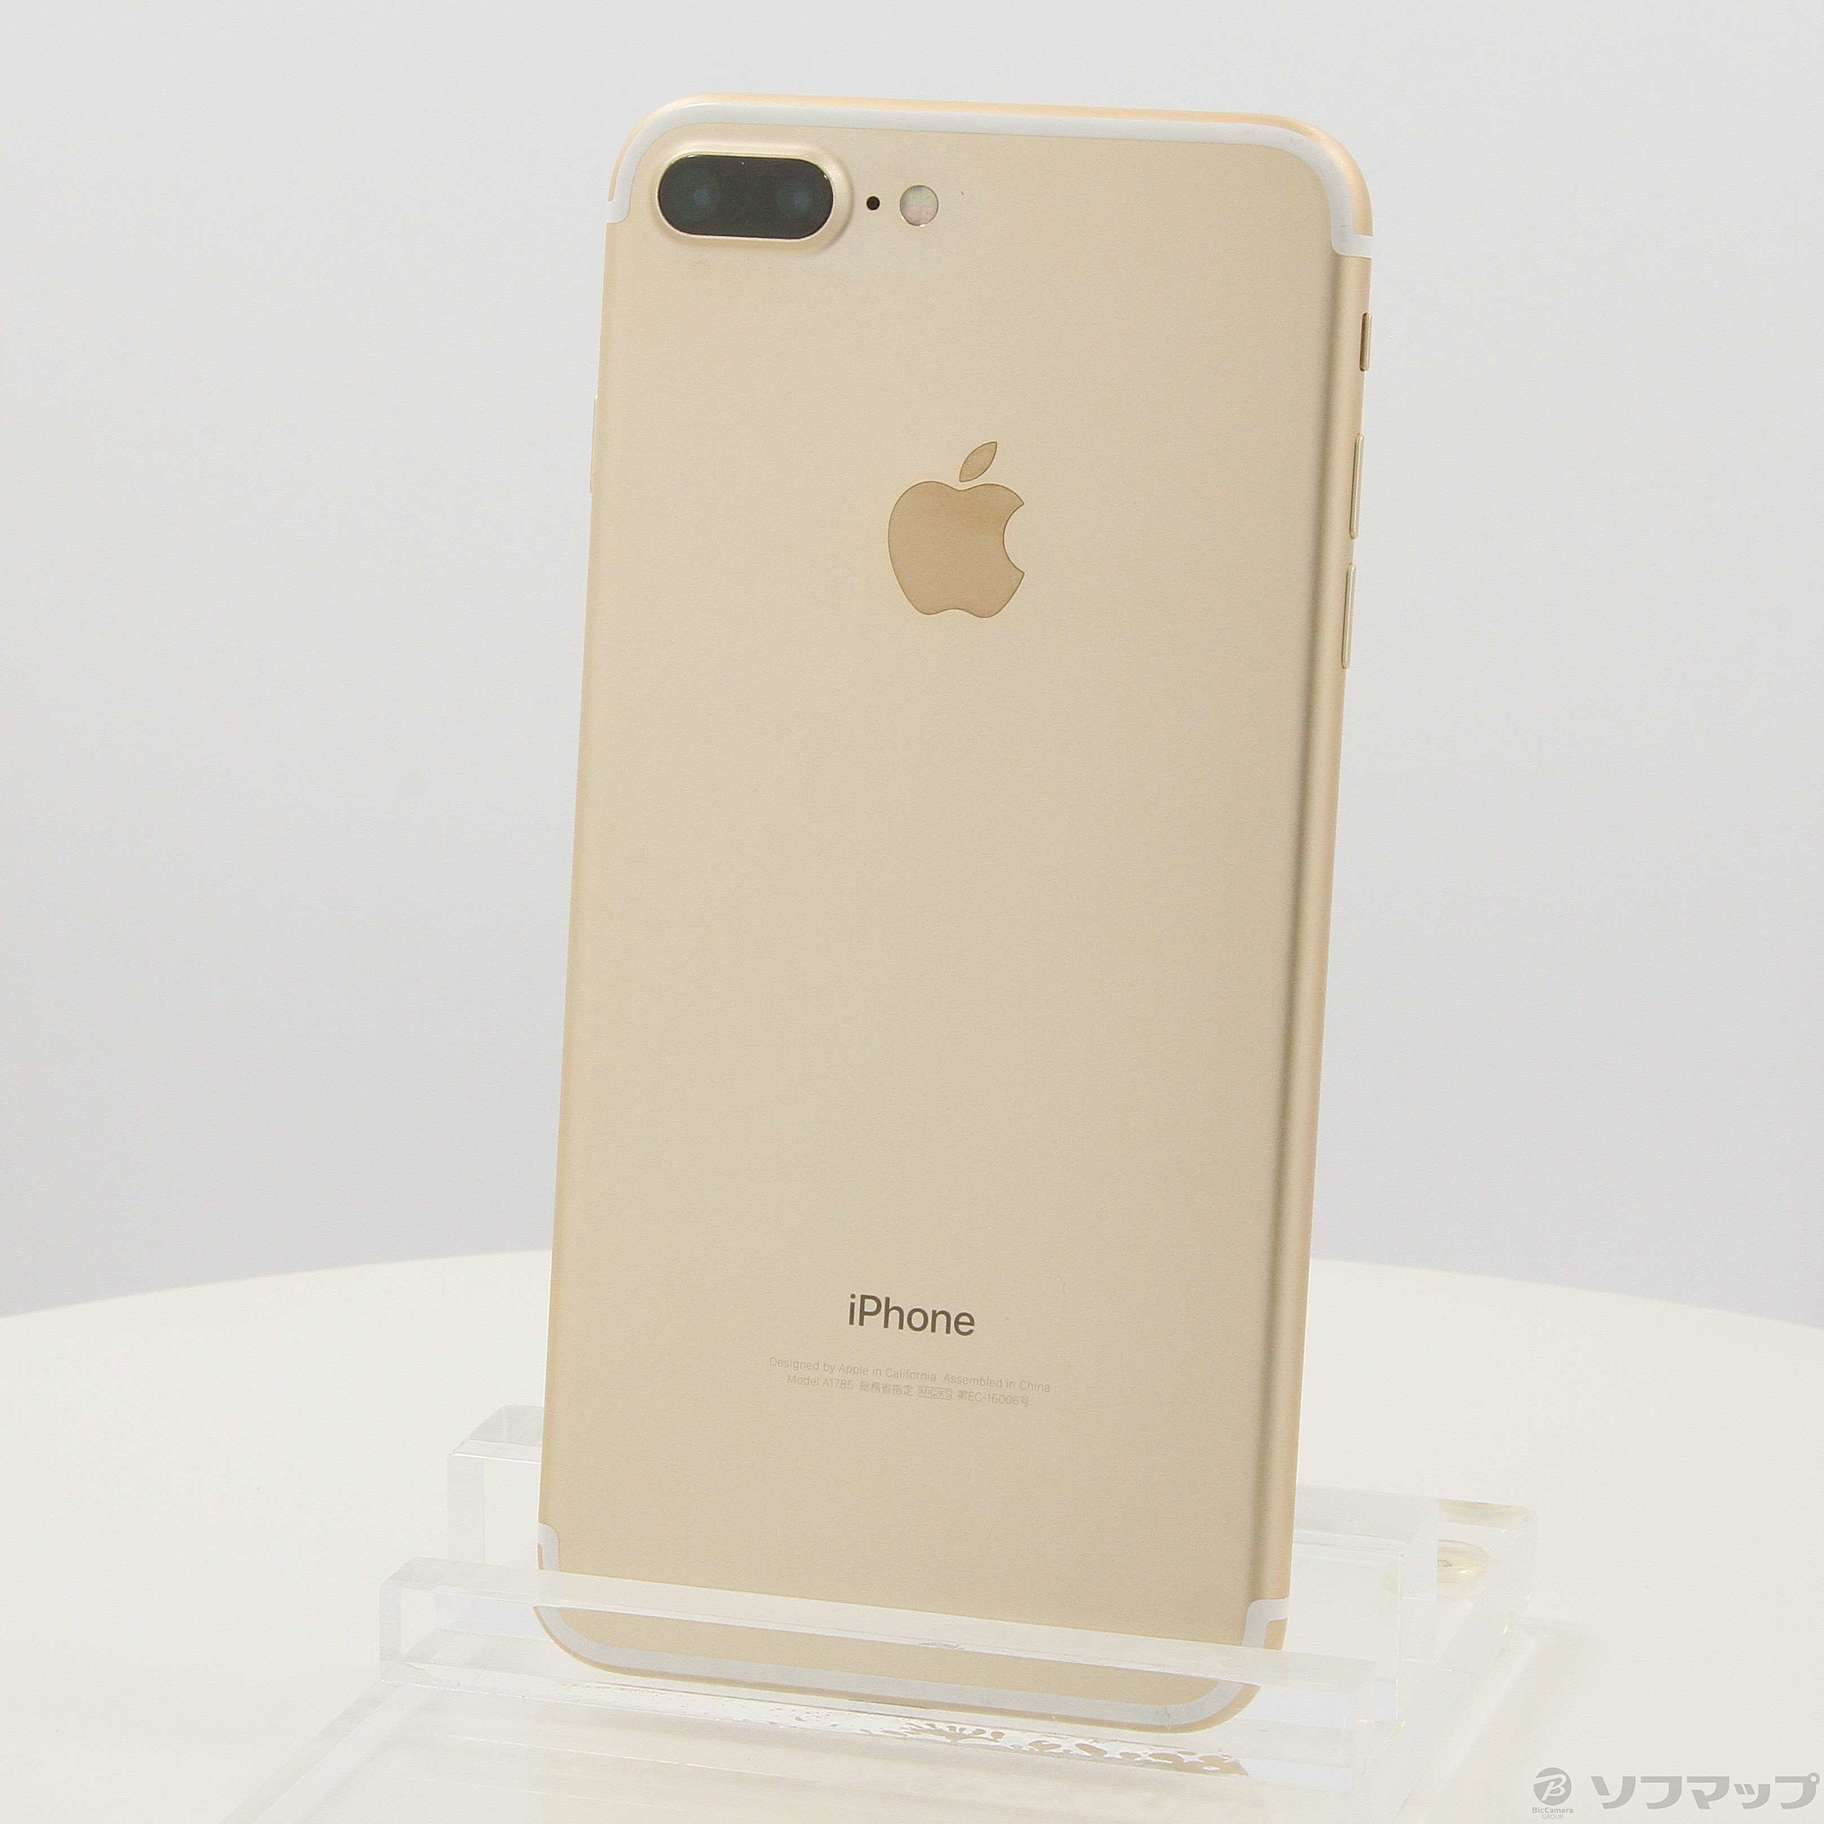 Apple iPhone7 Plus Gold 128GB